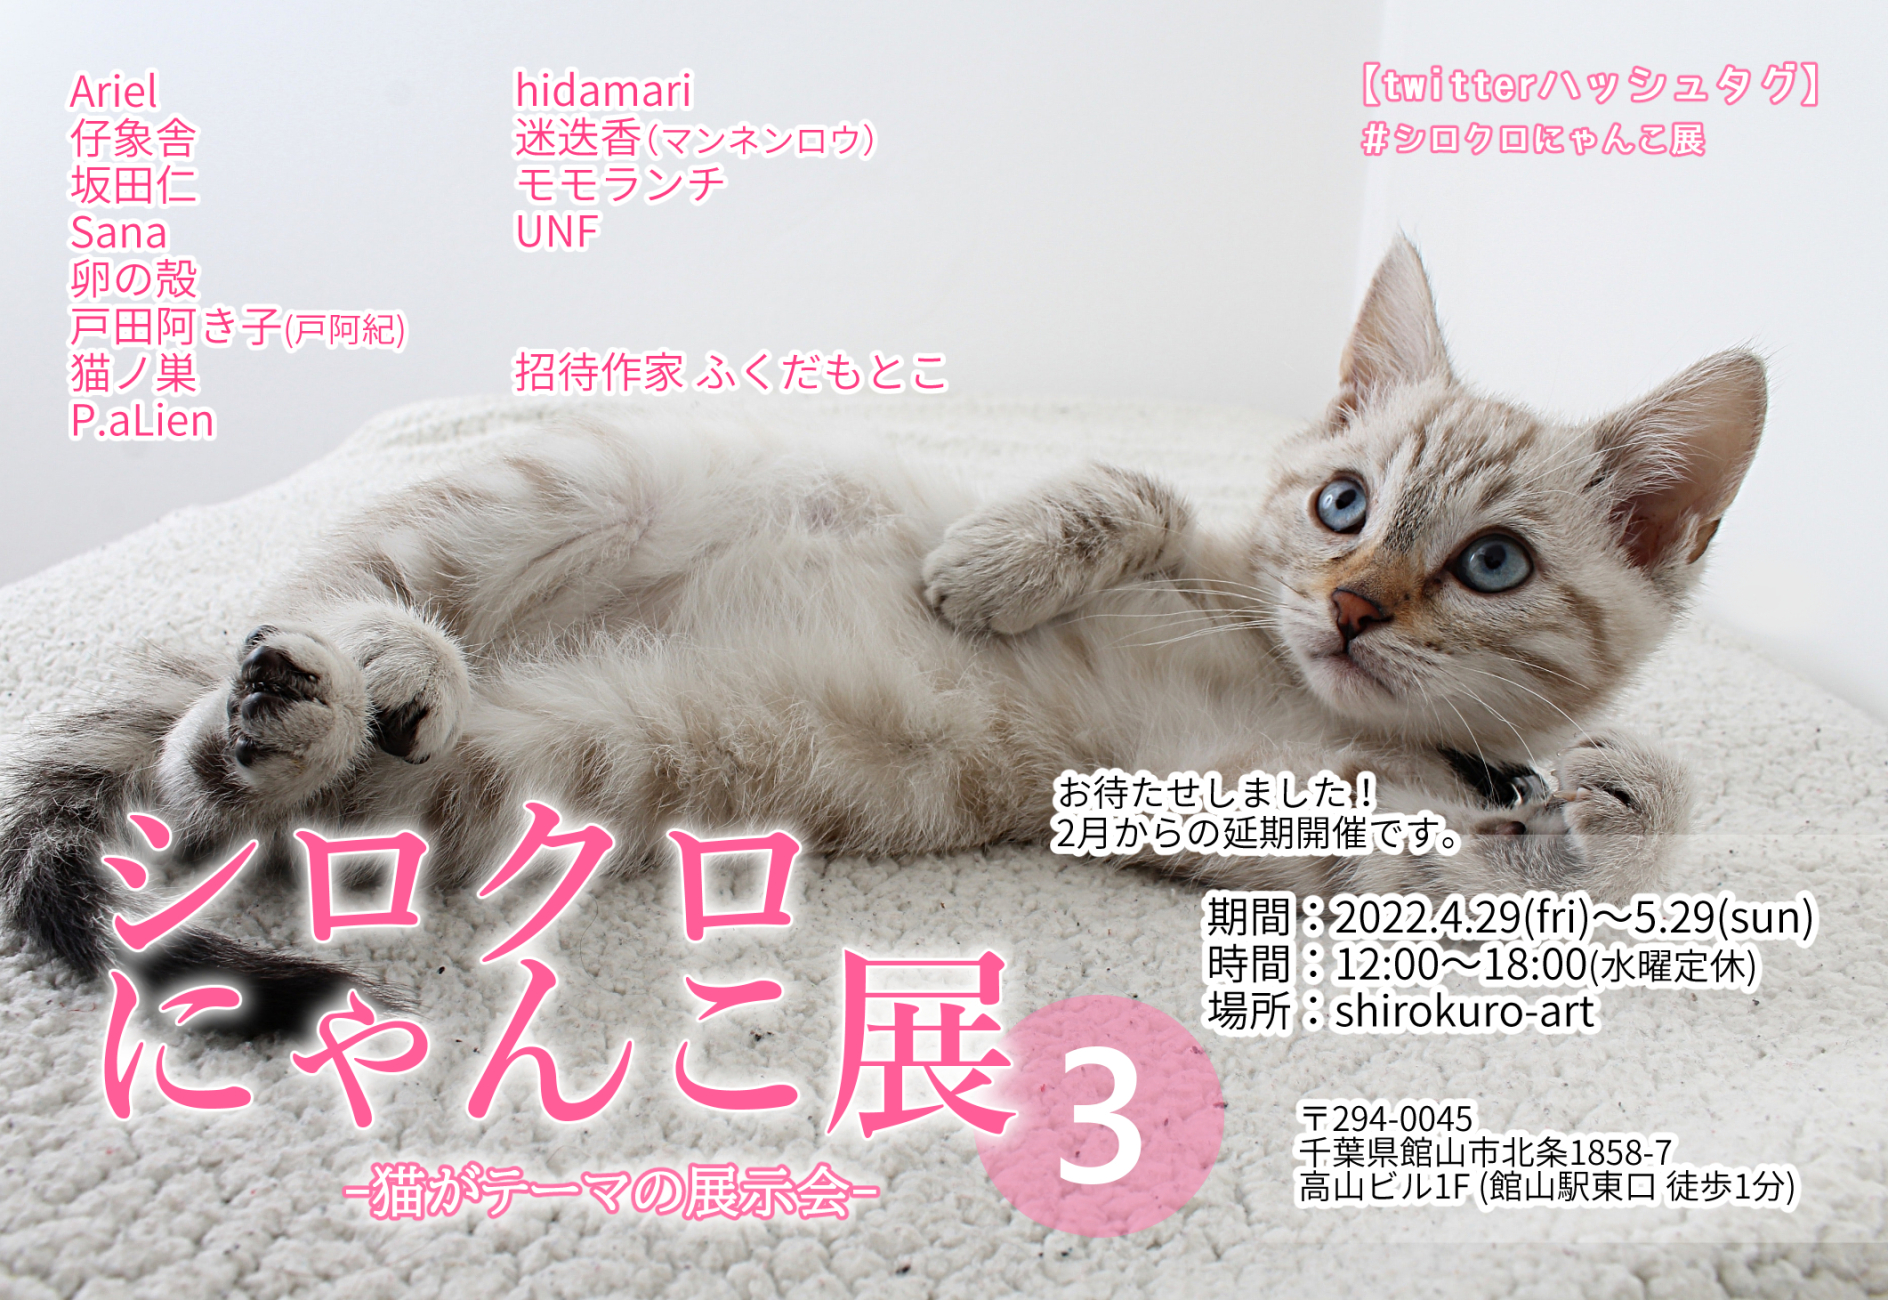 Shirokuro Art アート事業部 シロクロにゃんこ展 3 新日程 4 29 Fri 5 29 Sun 開催 猫がテーマの公募展 2月から延期開催の新しい日程です Gw含む日程で1ヶ月開催致します 猫好きの皆様 どうぞよろしくお願い致します ブログ T